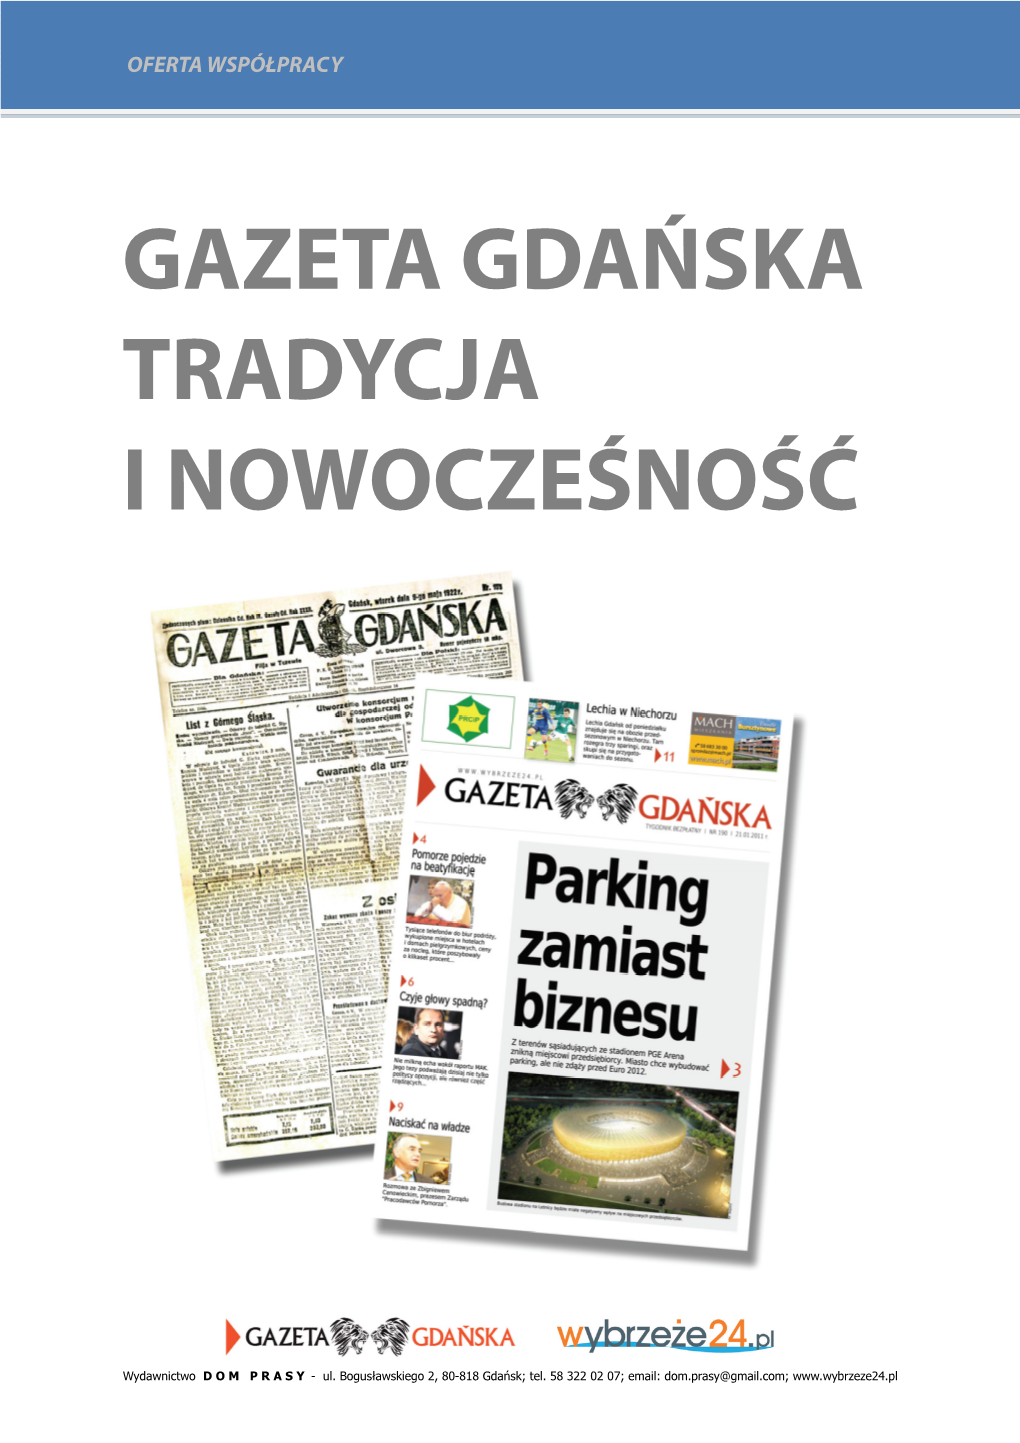 Gazeta Gdańska Tradycja I Nowocześność